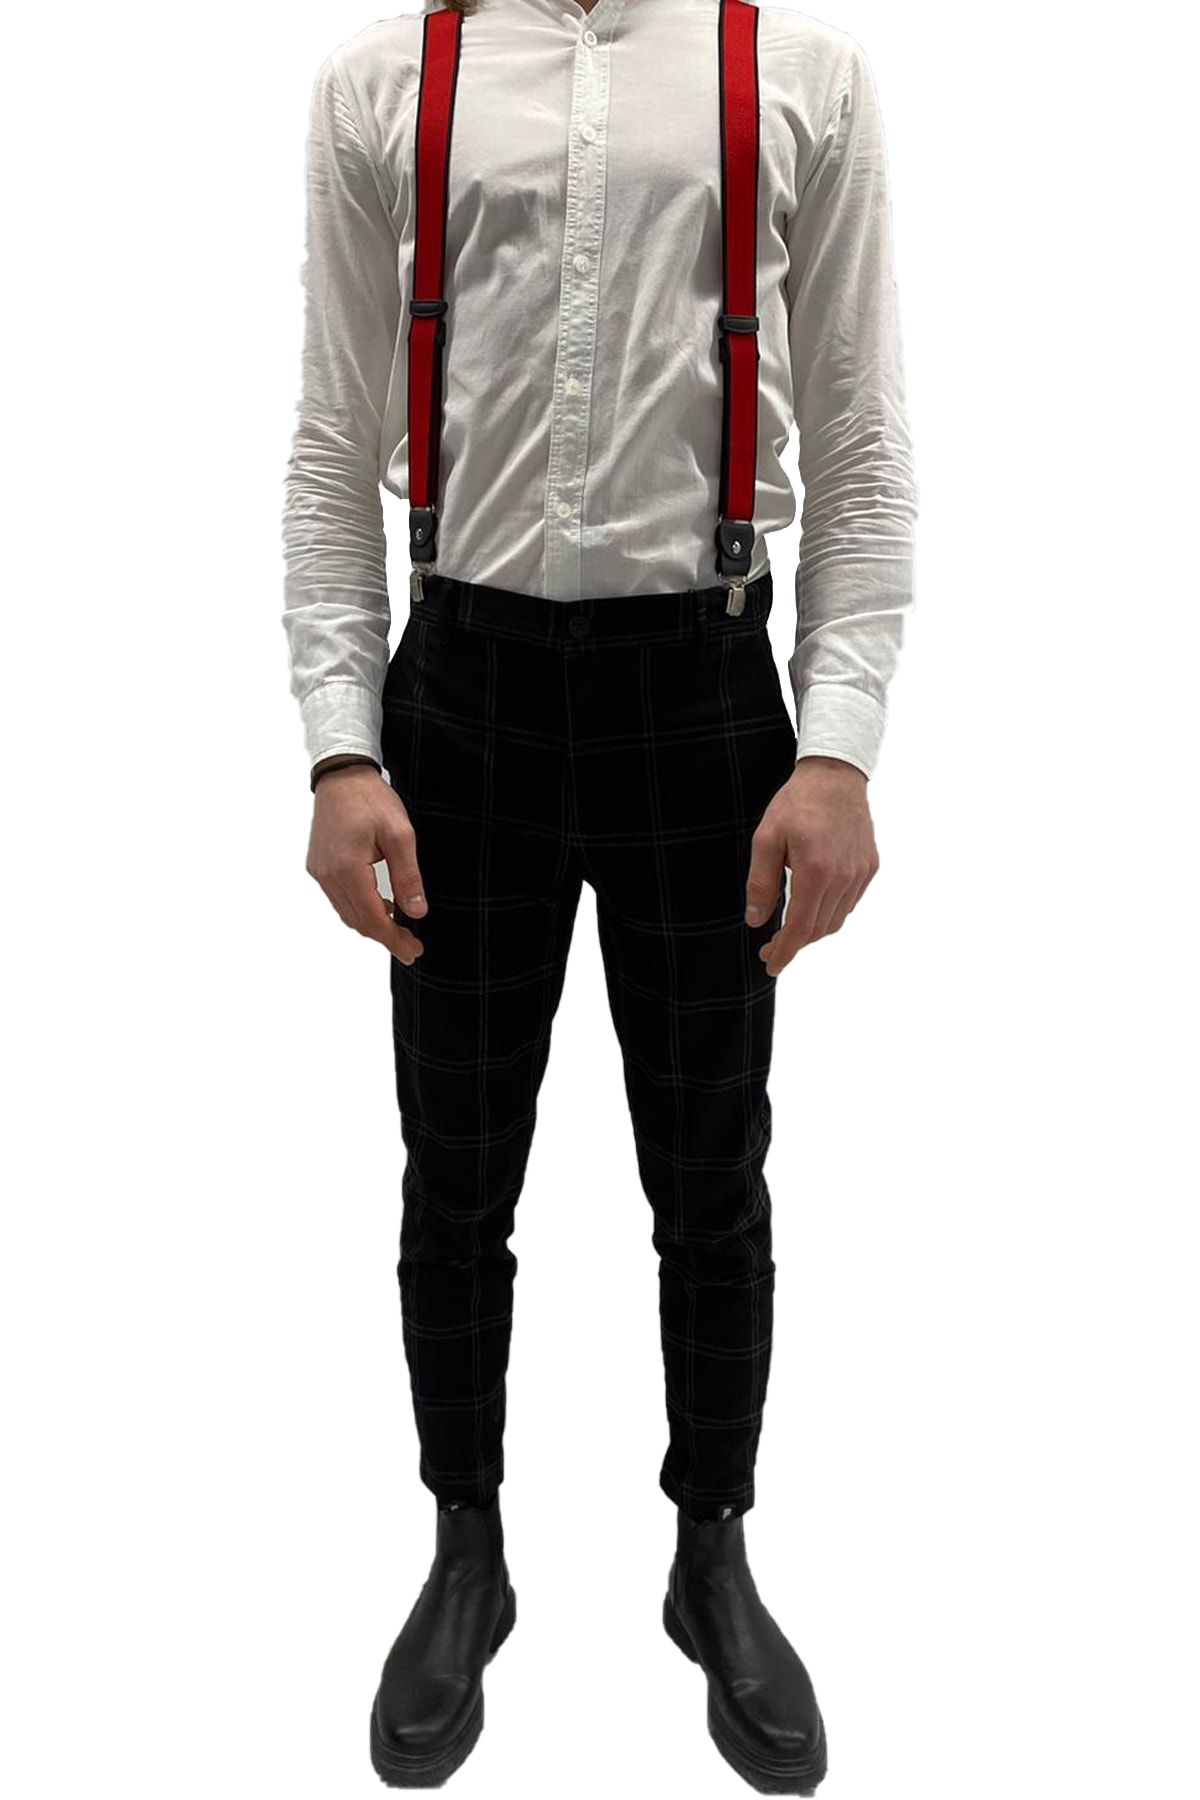 ZEKTON %100 Deri Kırmızı Unisex Pantolon Askısı